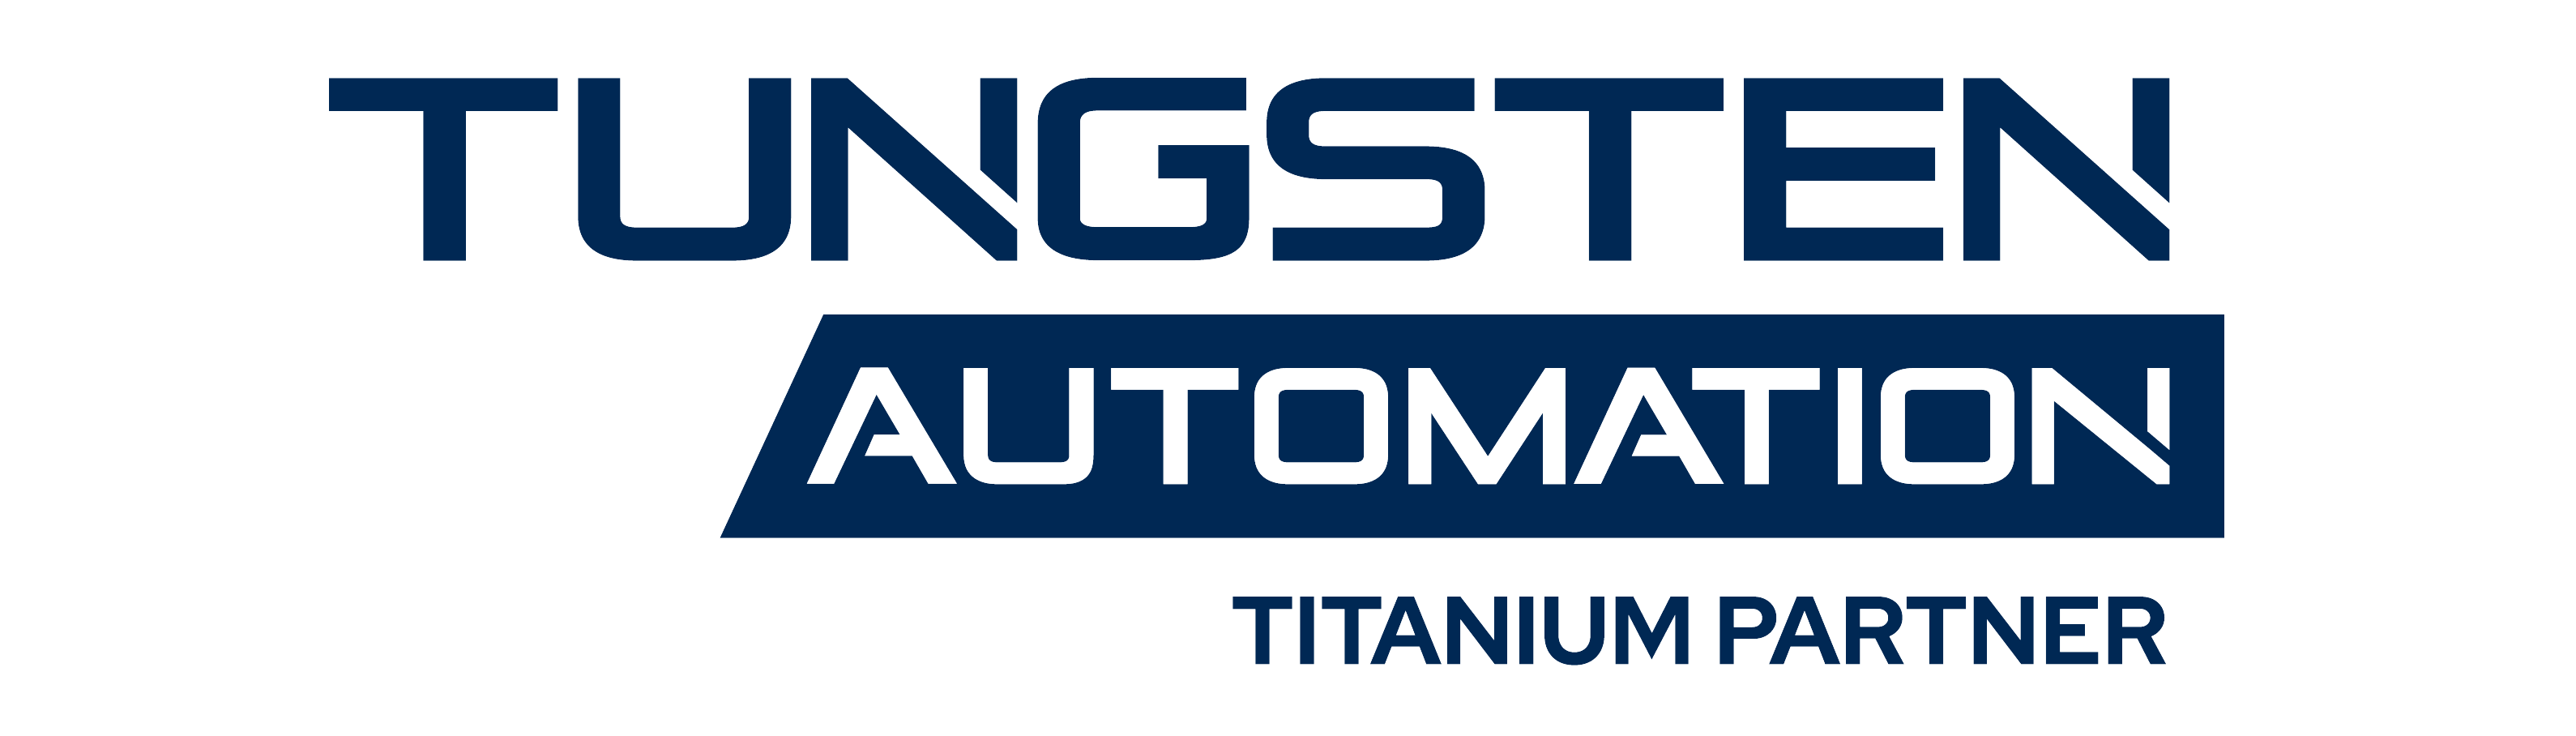 Tungsten-Automation-Titanium-Partner-Logo-Dark-3